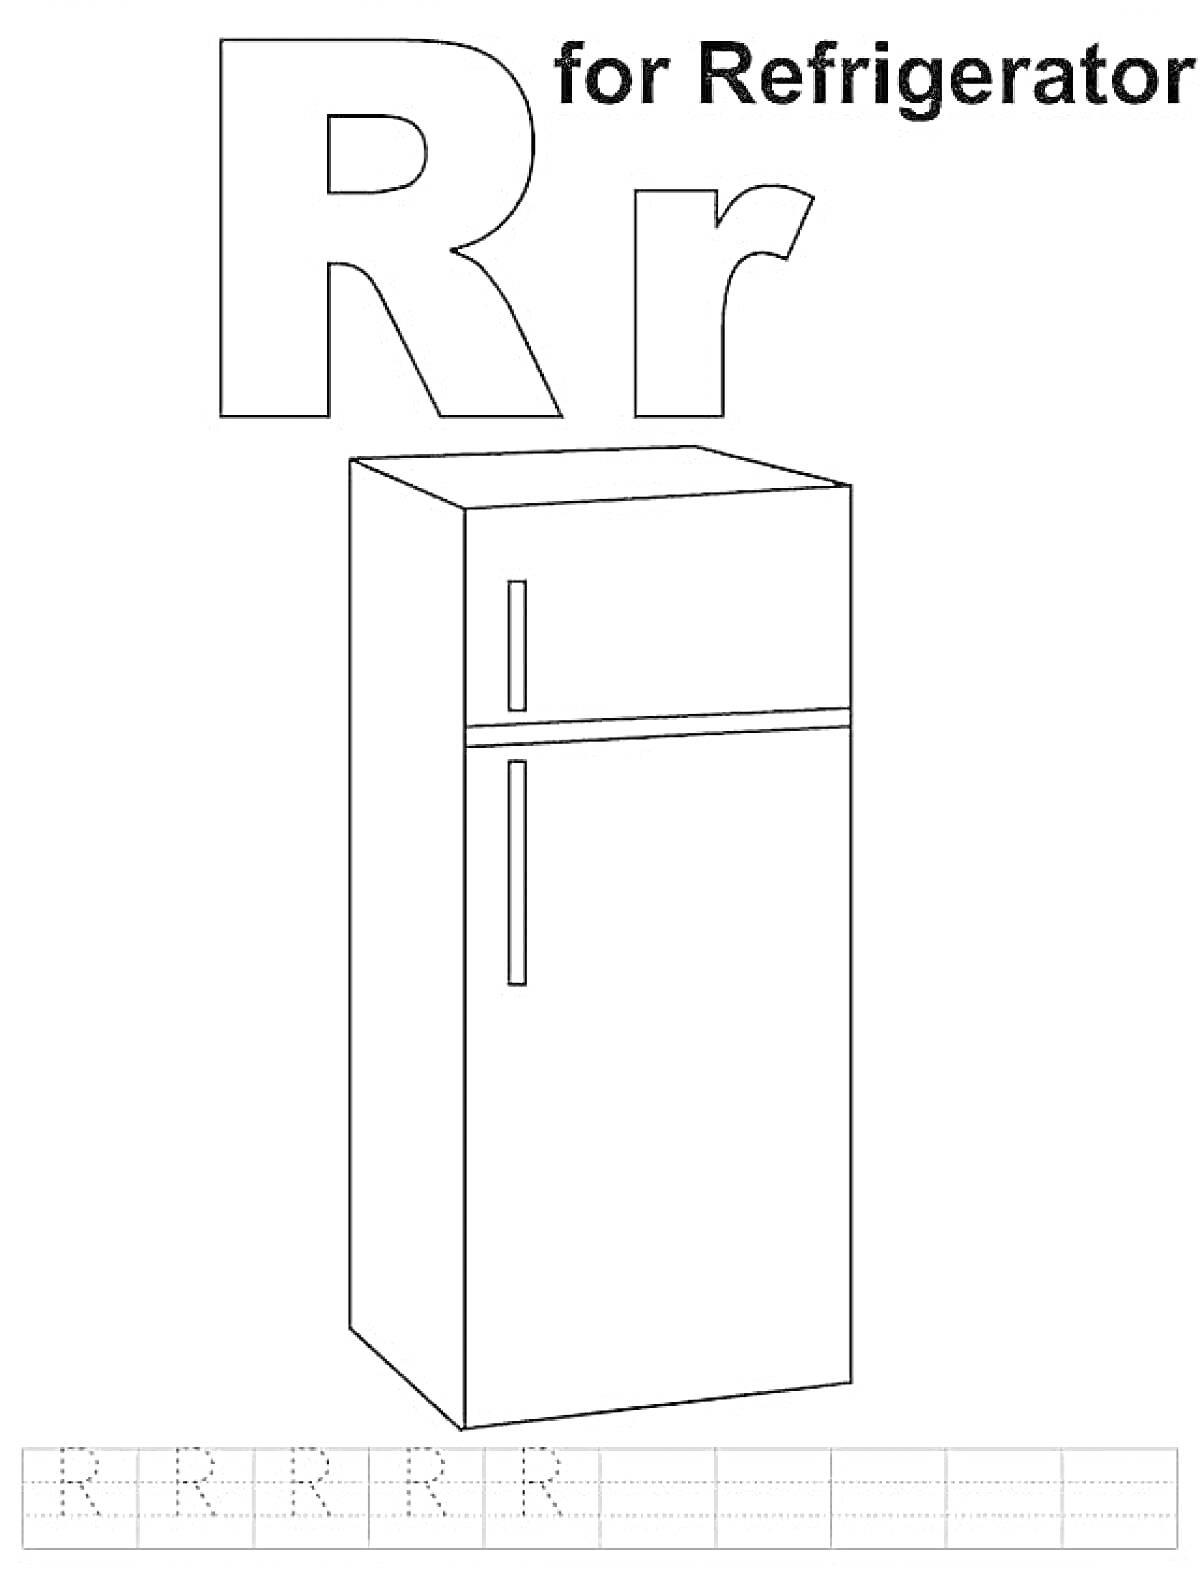 Холодильник с заглавной и строчной буквой R, надписью 